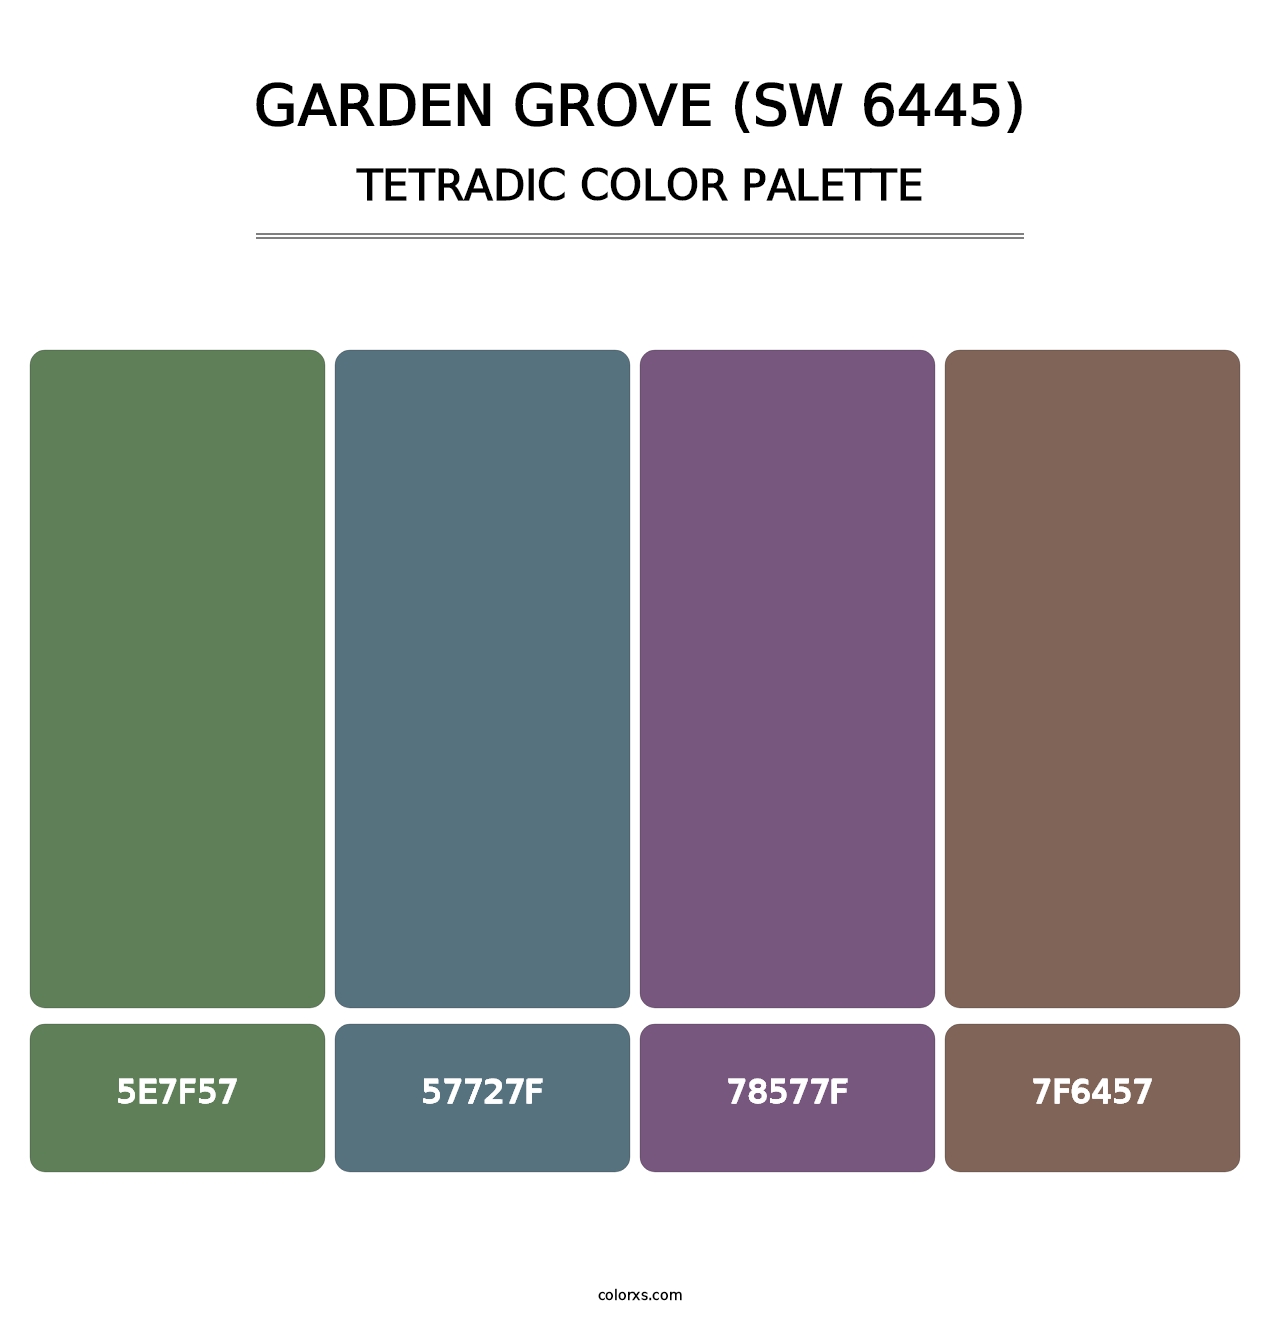 Garden Grove (SW 6445) - Tetradic Color Palette